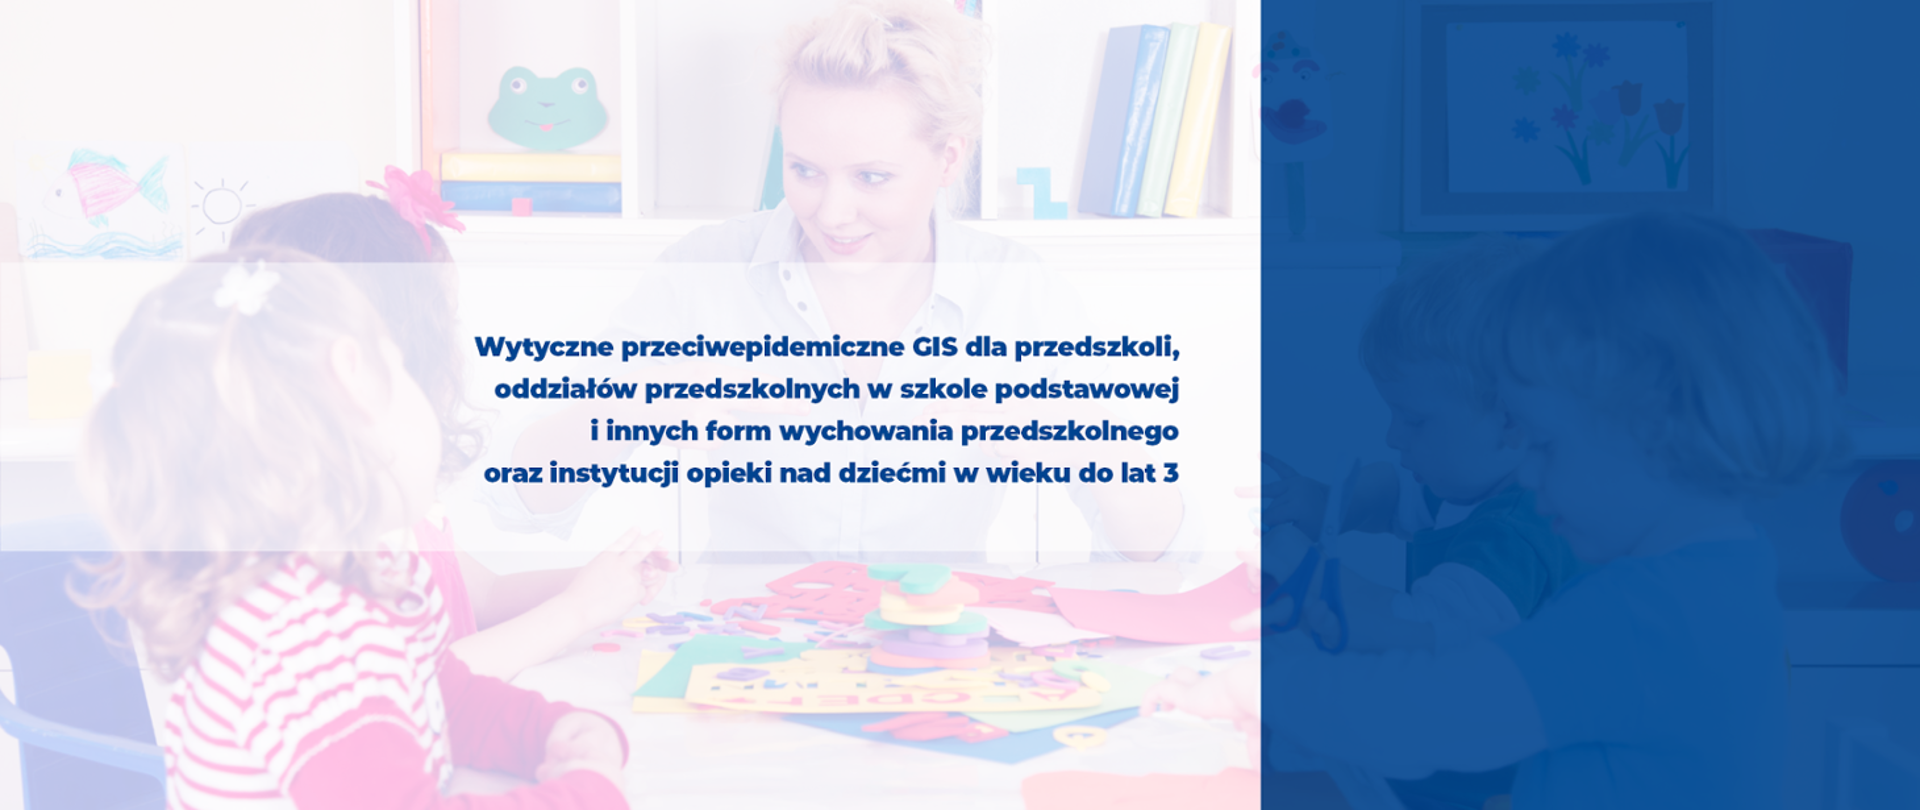 Wytyczne przeciwepidemiczne GIS dla przedszkoli, oddziałów przedszkolnych w szkole podstawowej i innych form wychowania przedszkolnego oraz instytucji opieki nad dziećmi w wieku do 3 lat.